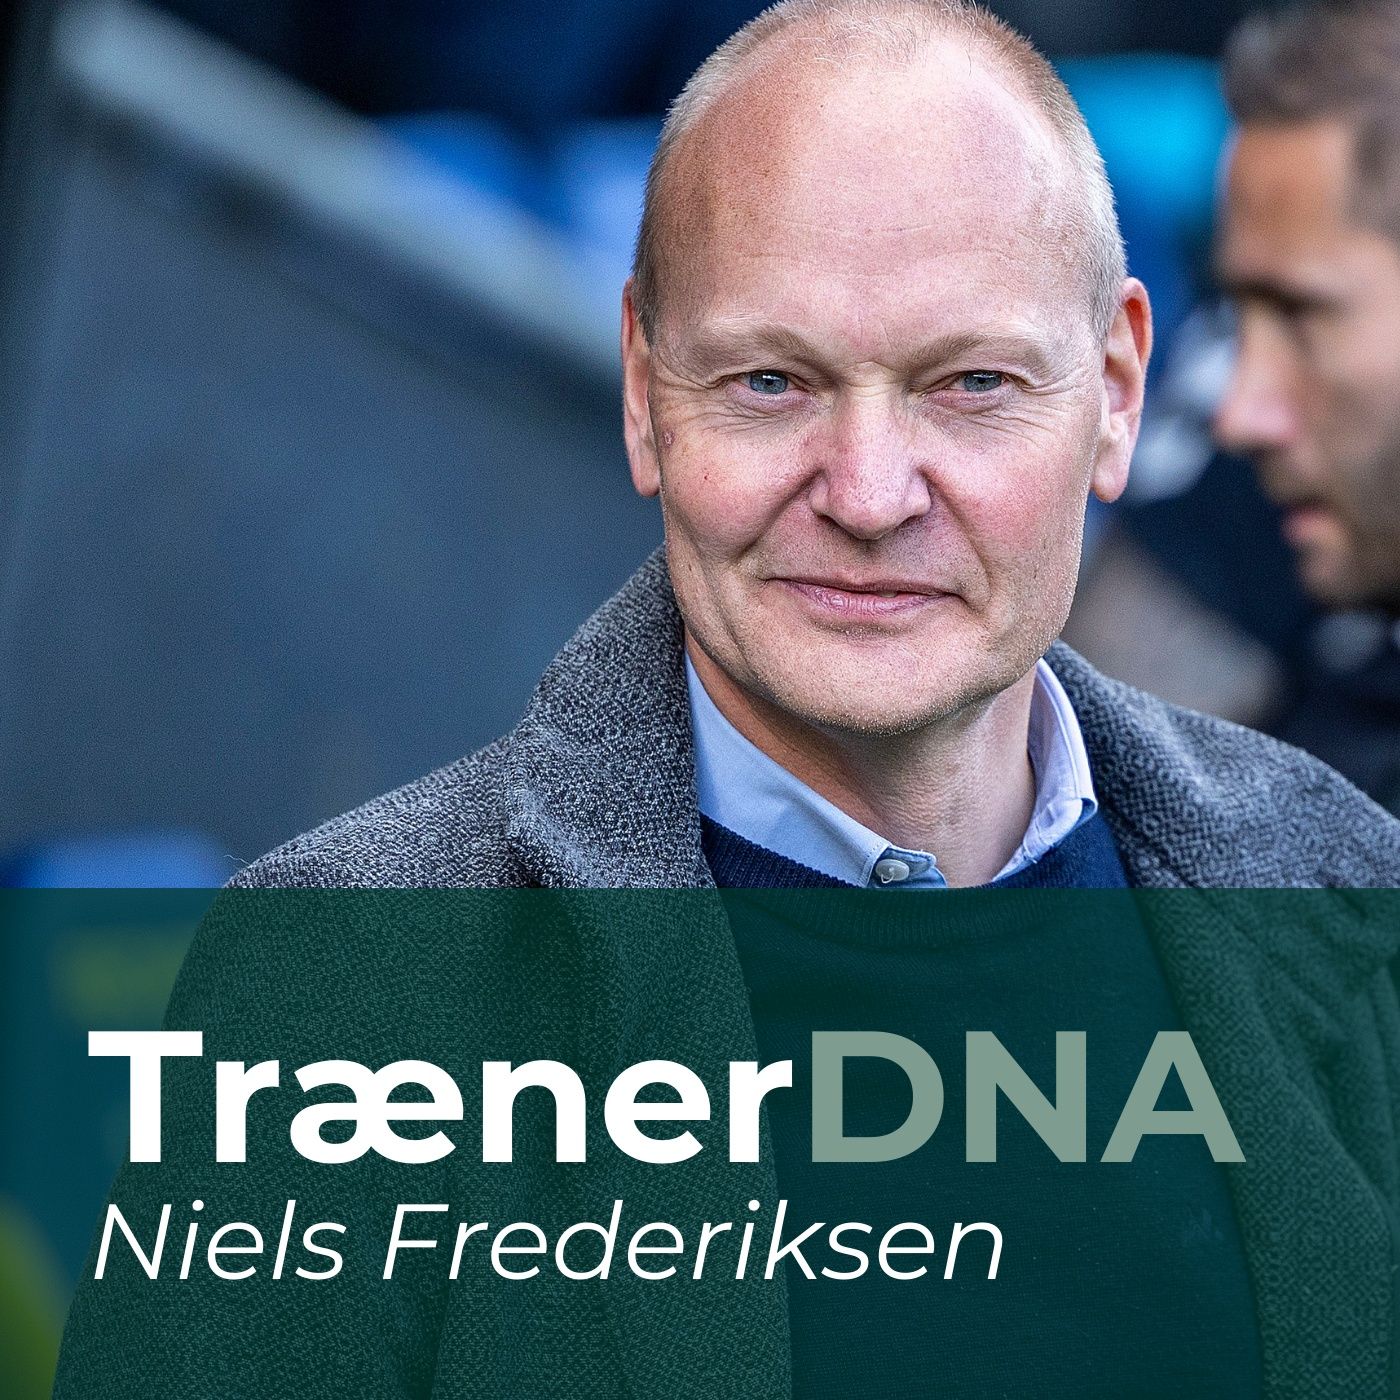 Træner DNA: Hvem er Niels Frederiksen?